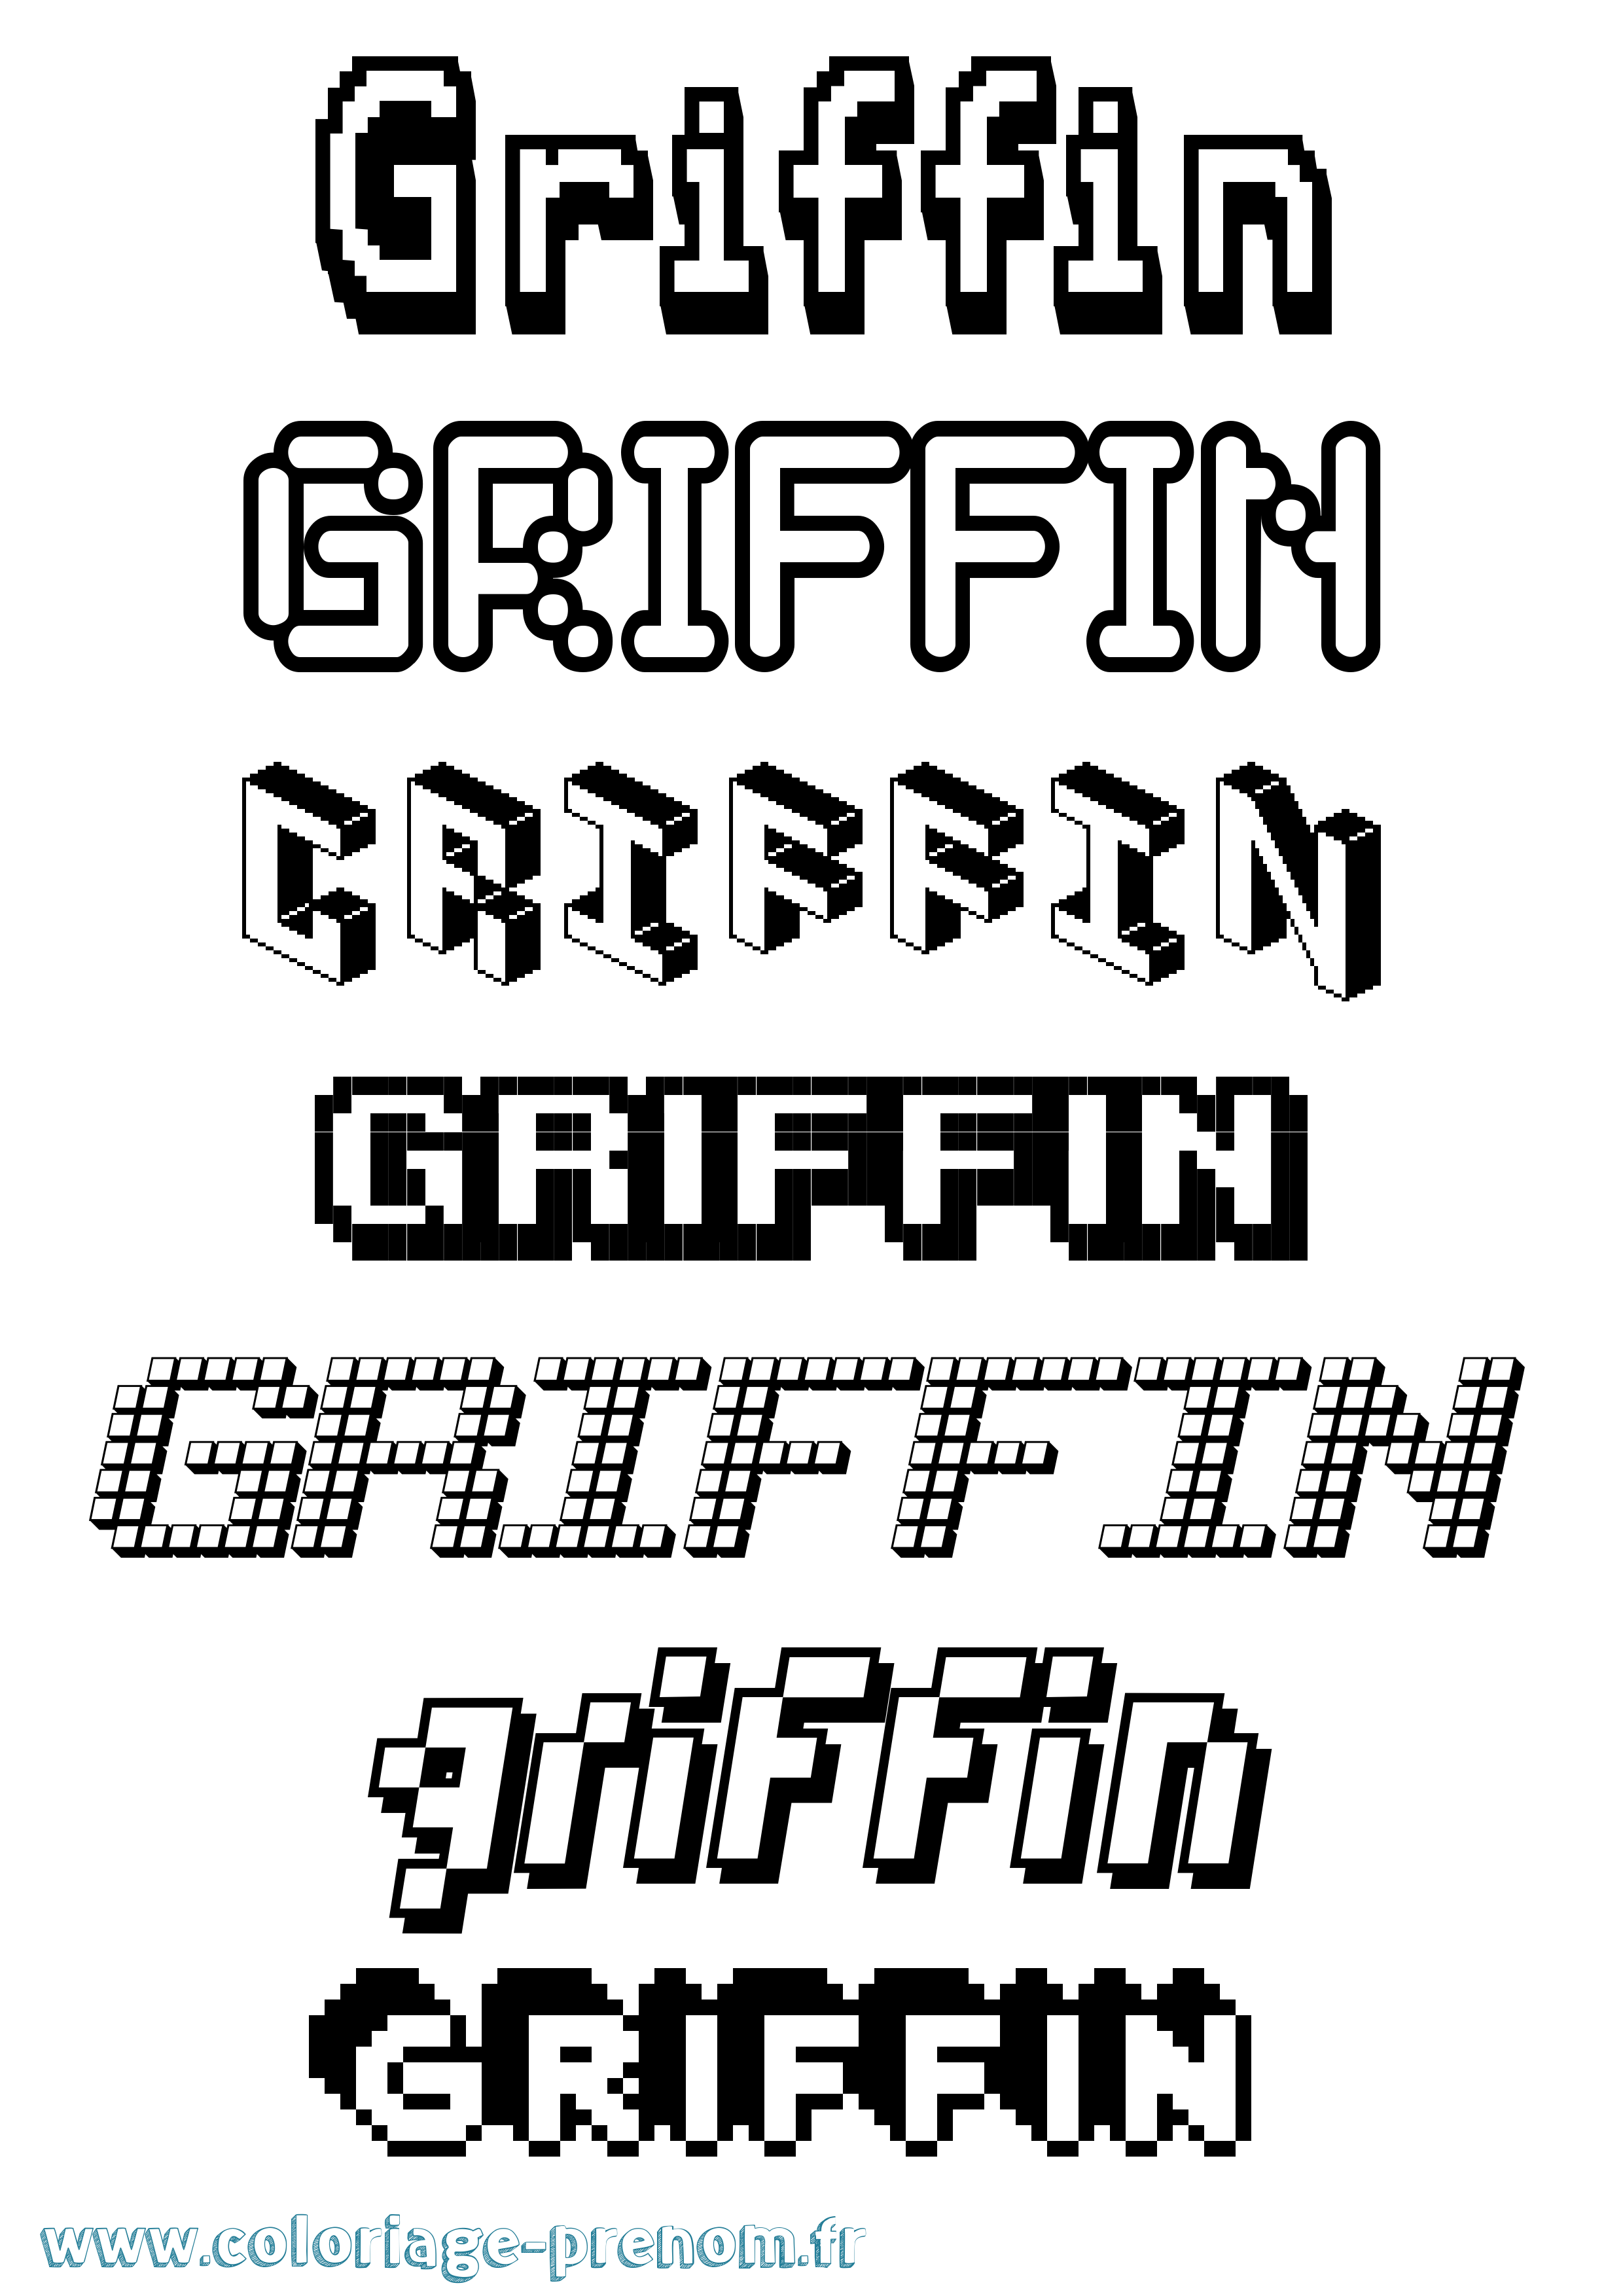 Coloriage prénom Griffin Pixel